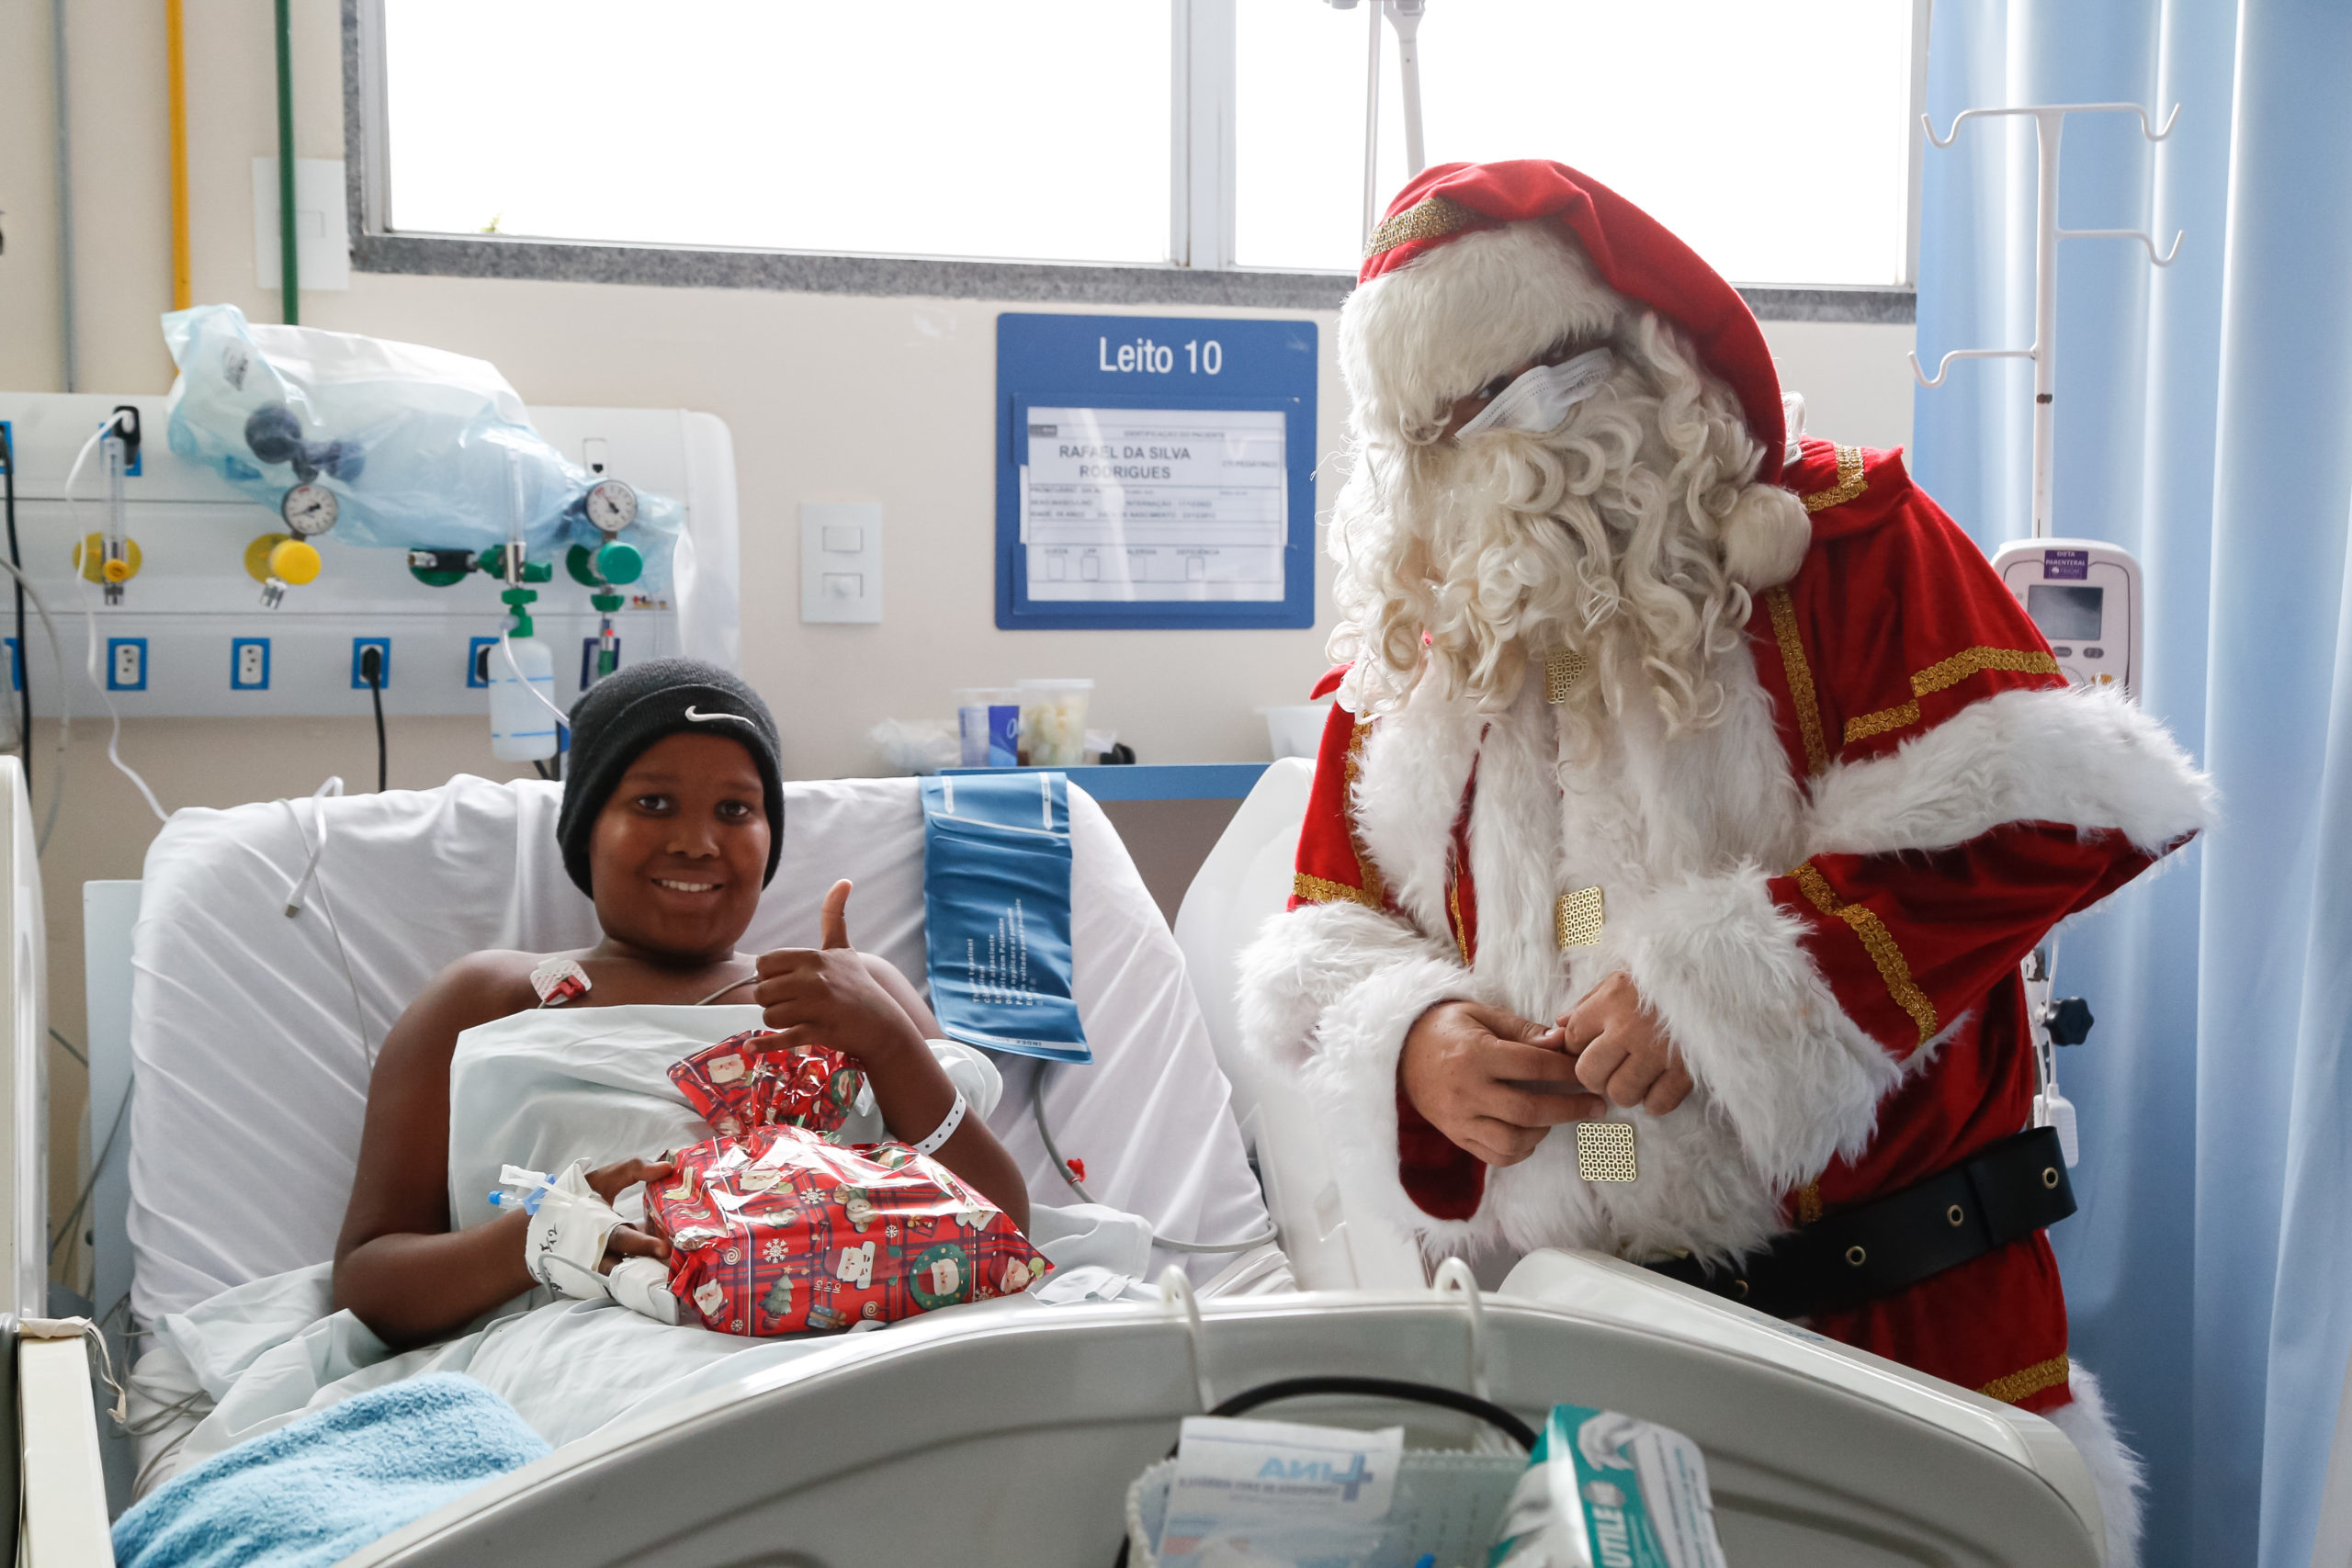 Papai Noel leva magia do natal a pacientes do Souza Aguiar, no Centro do Rio